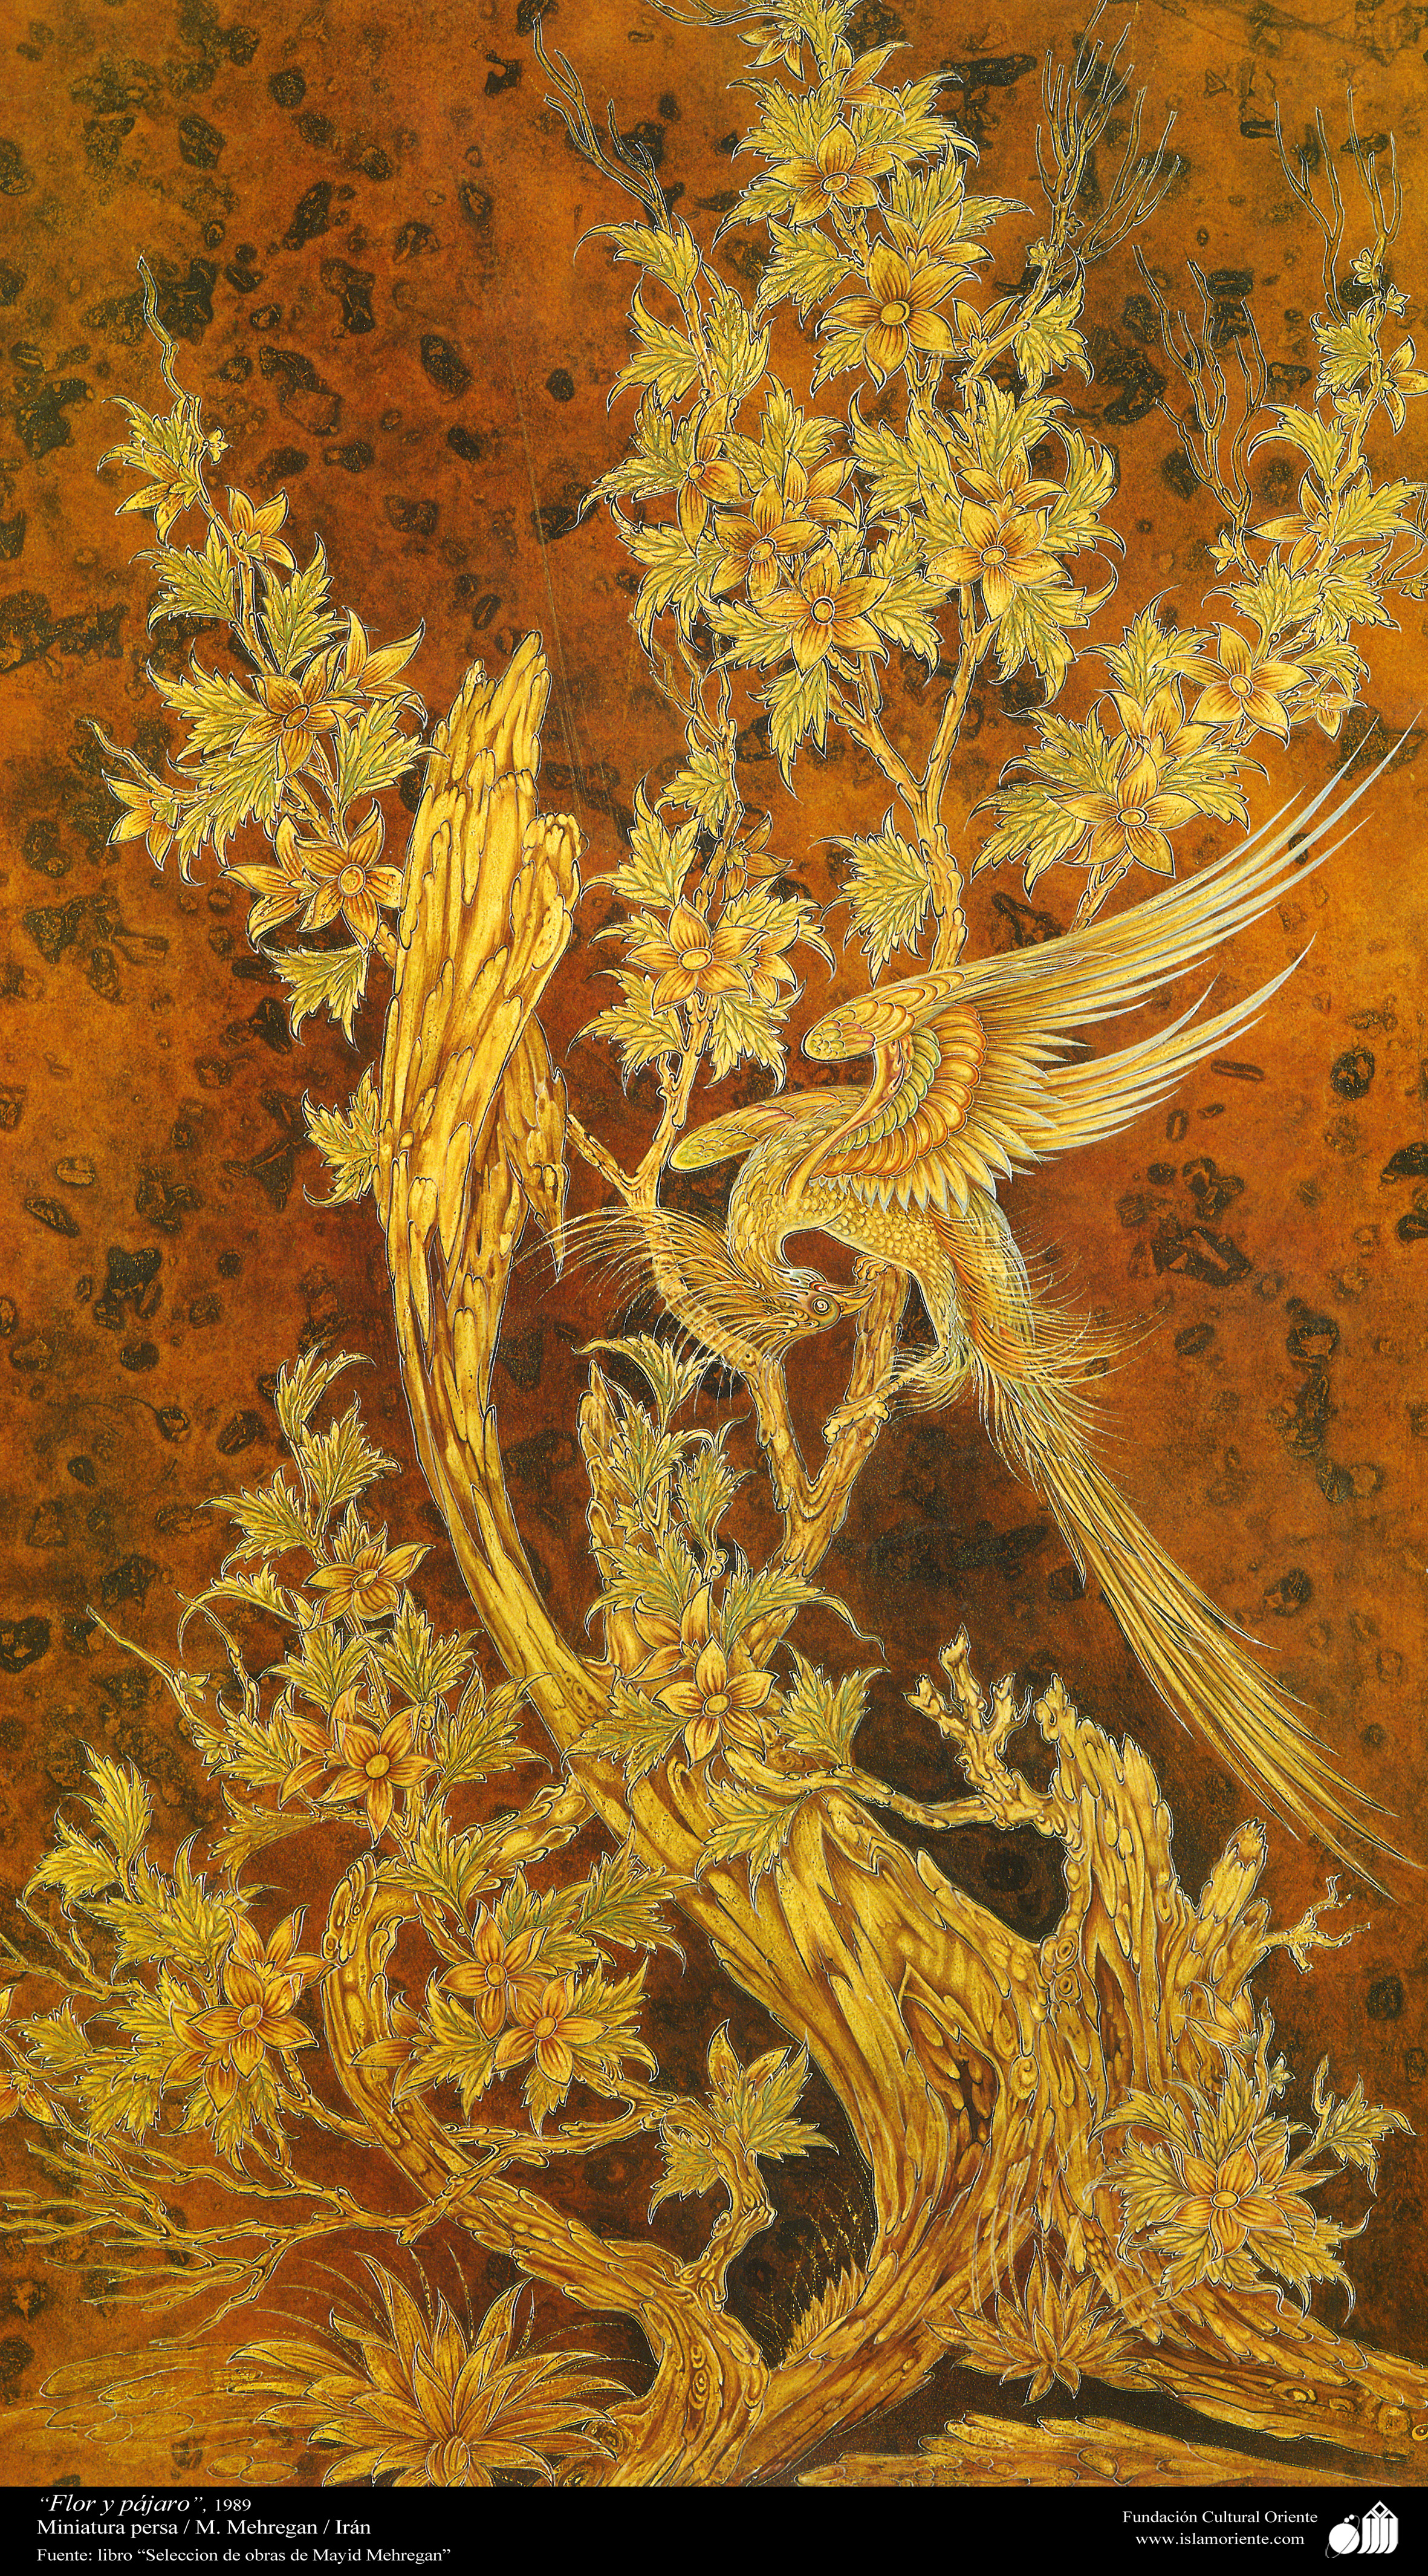 Miniatura persa, Flor y pájaro | Galería de Arte Islámico y Fotografía